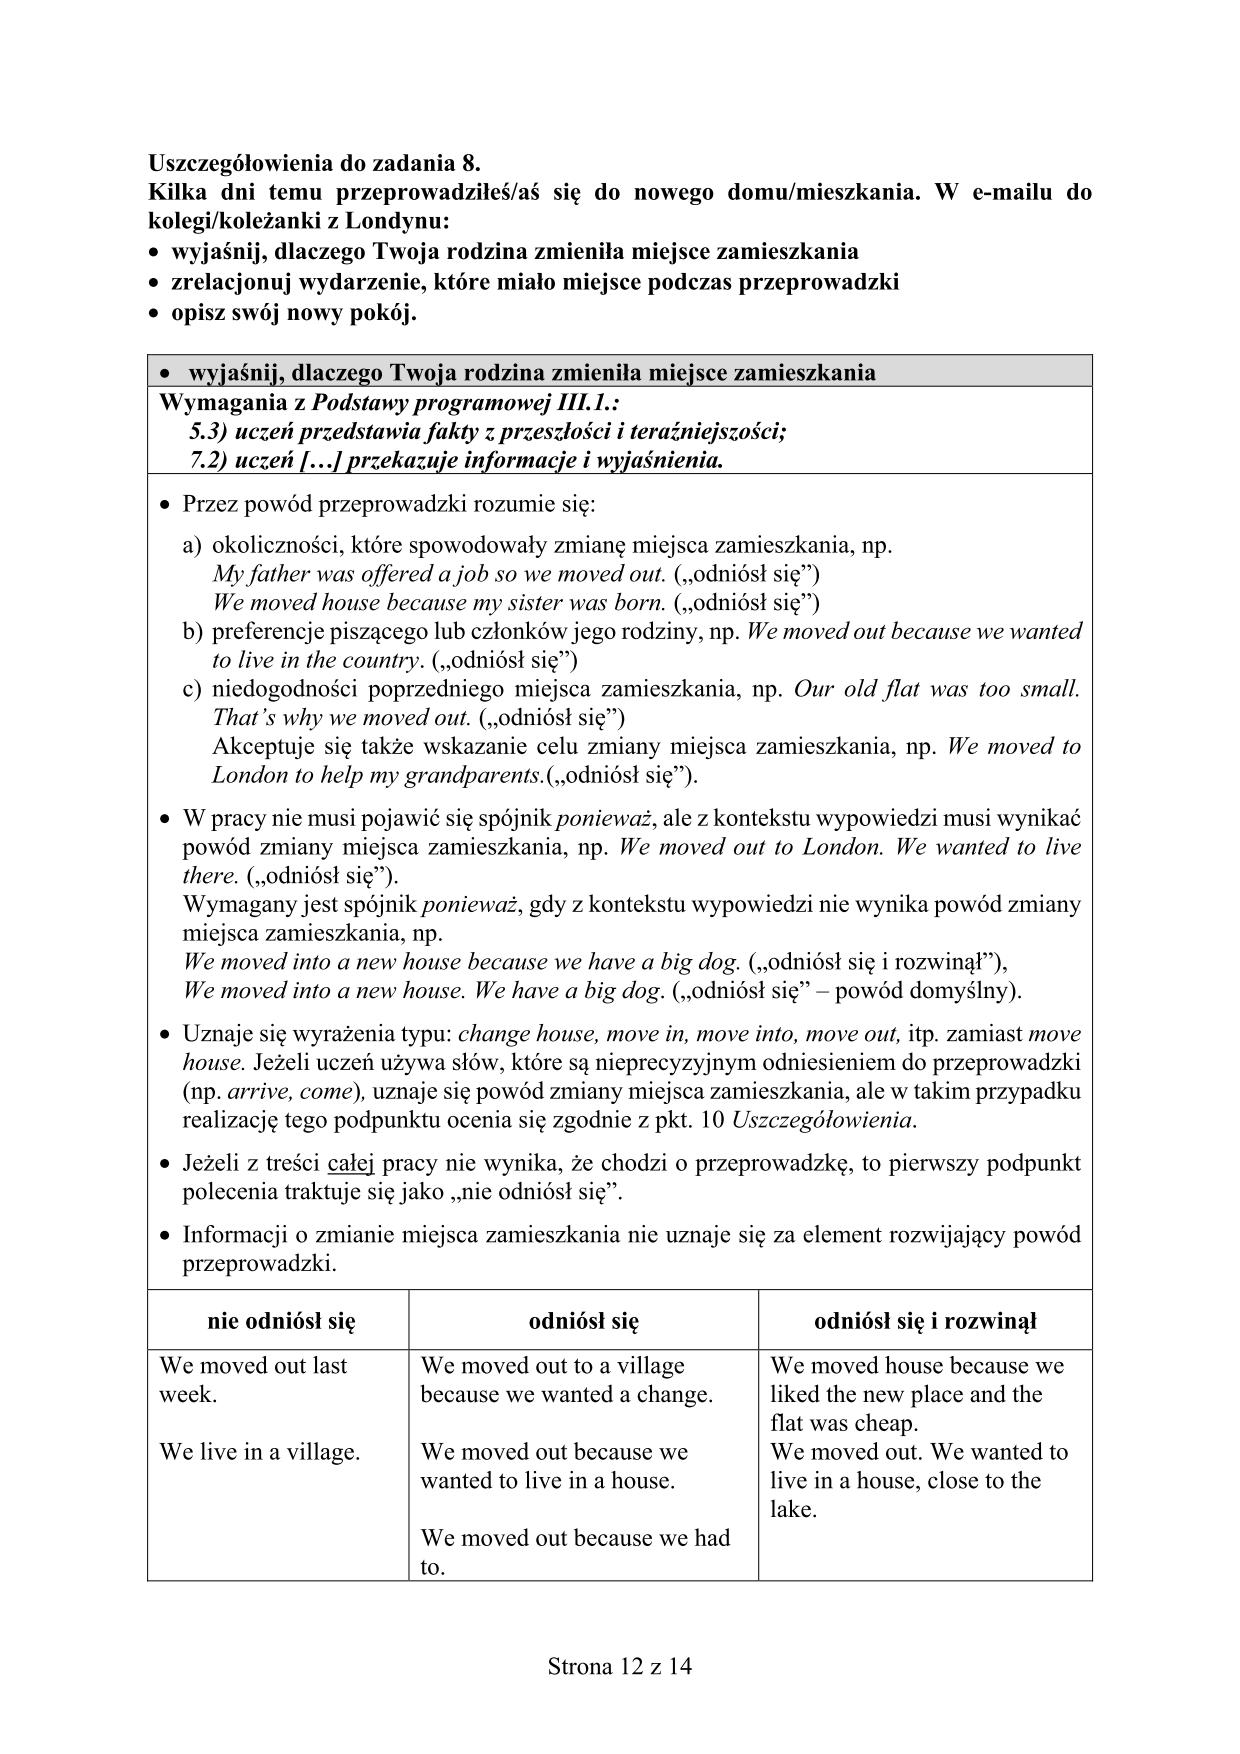 odpowiedzi-angielski-poziom-rozszerzony-egzamin-gimnazjalny-2016-12